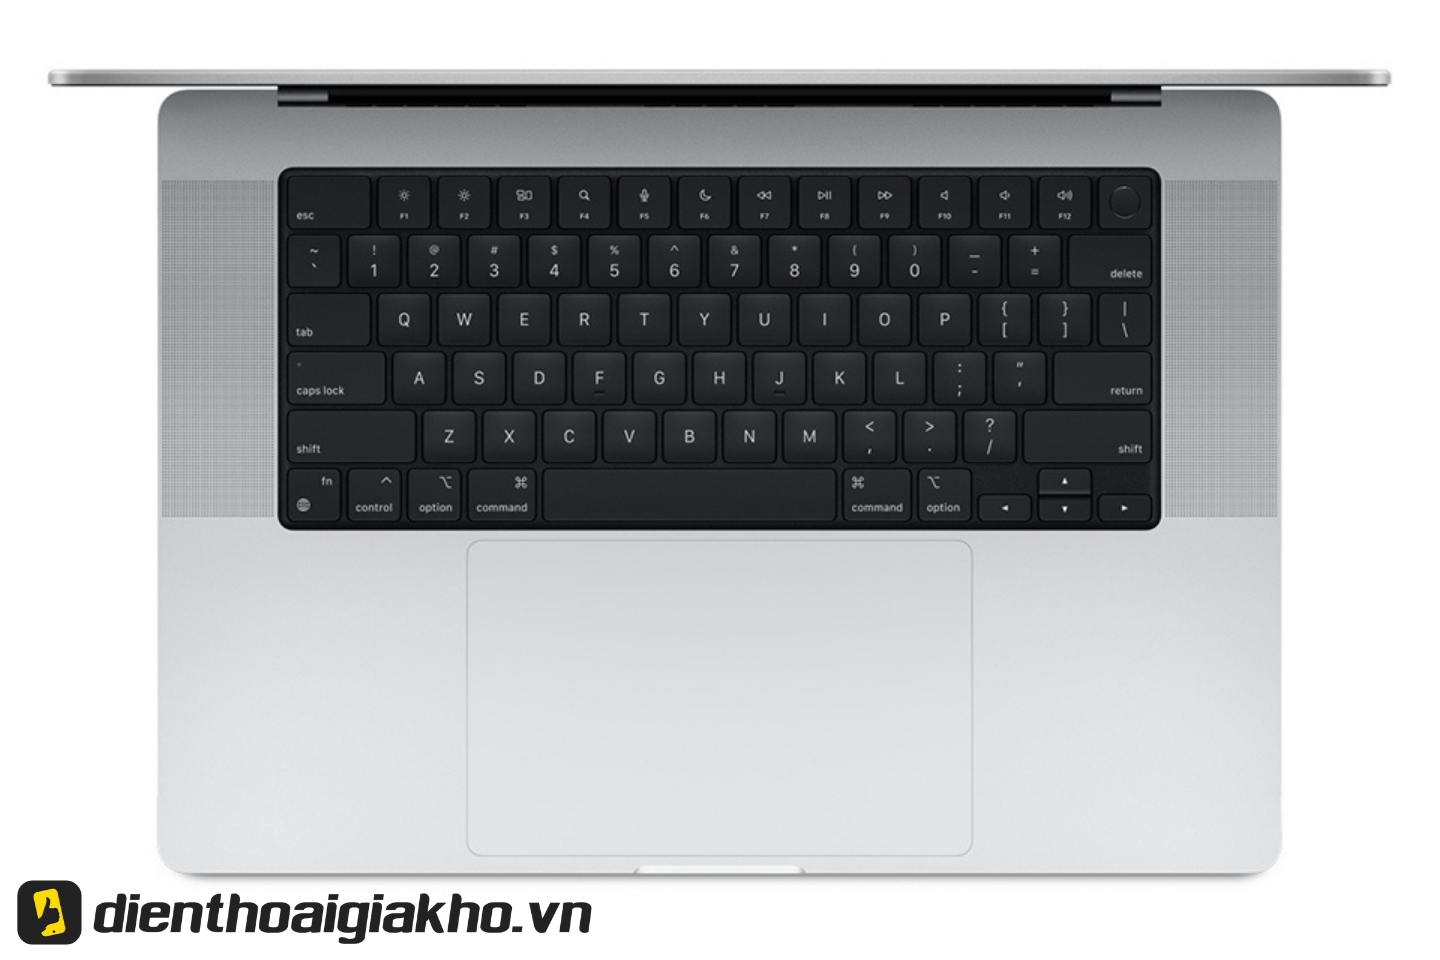 Magic Keyboard với thiết kế cắt kéo cực tinh tế, khoảng cách giữa các nút phím vừa đủ hỗ trợ bạn đánh máy thoải mái và nhanh nhất